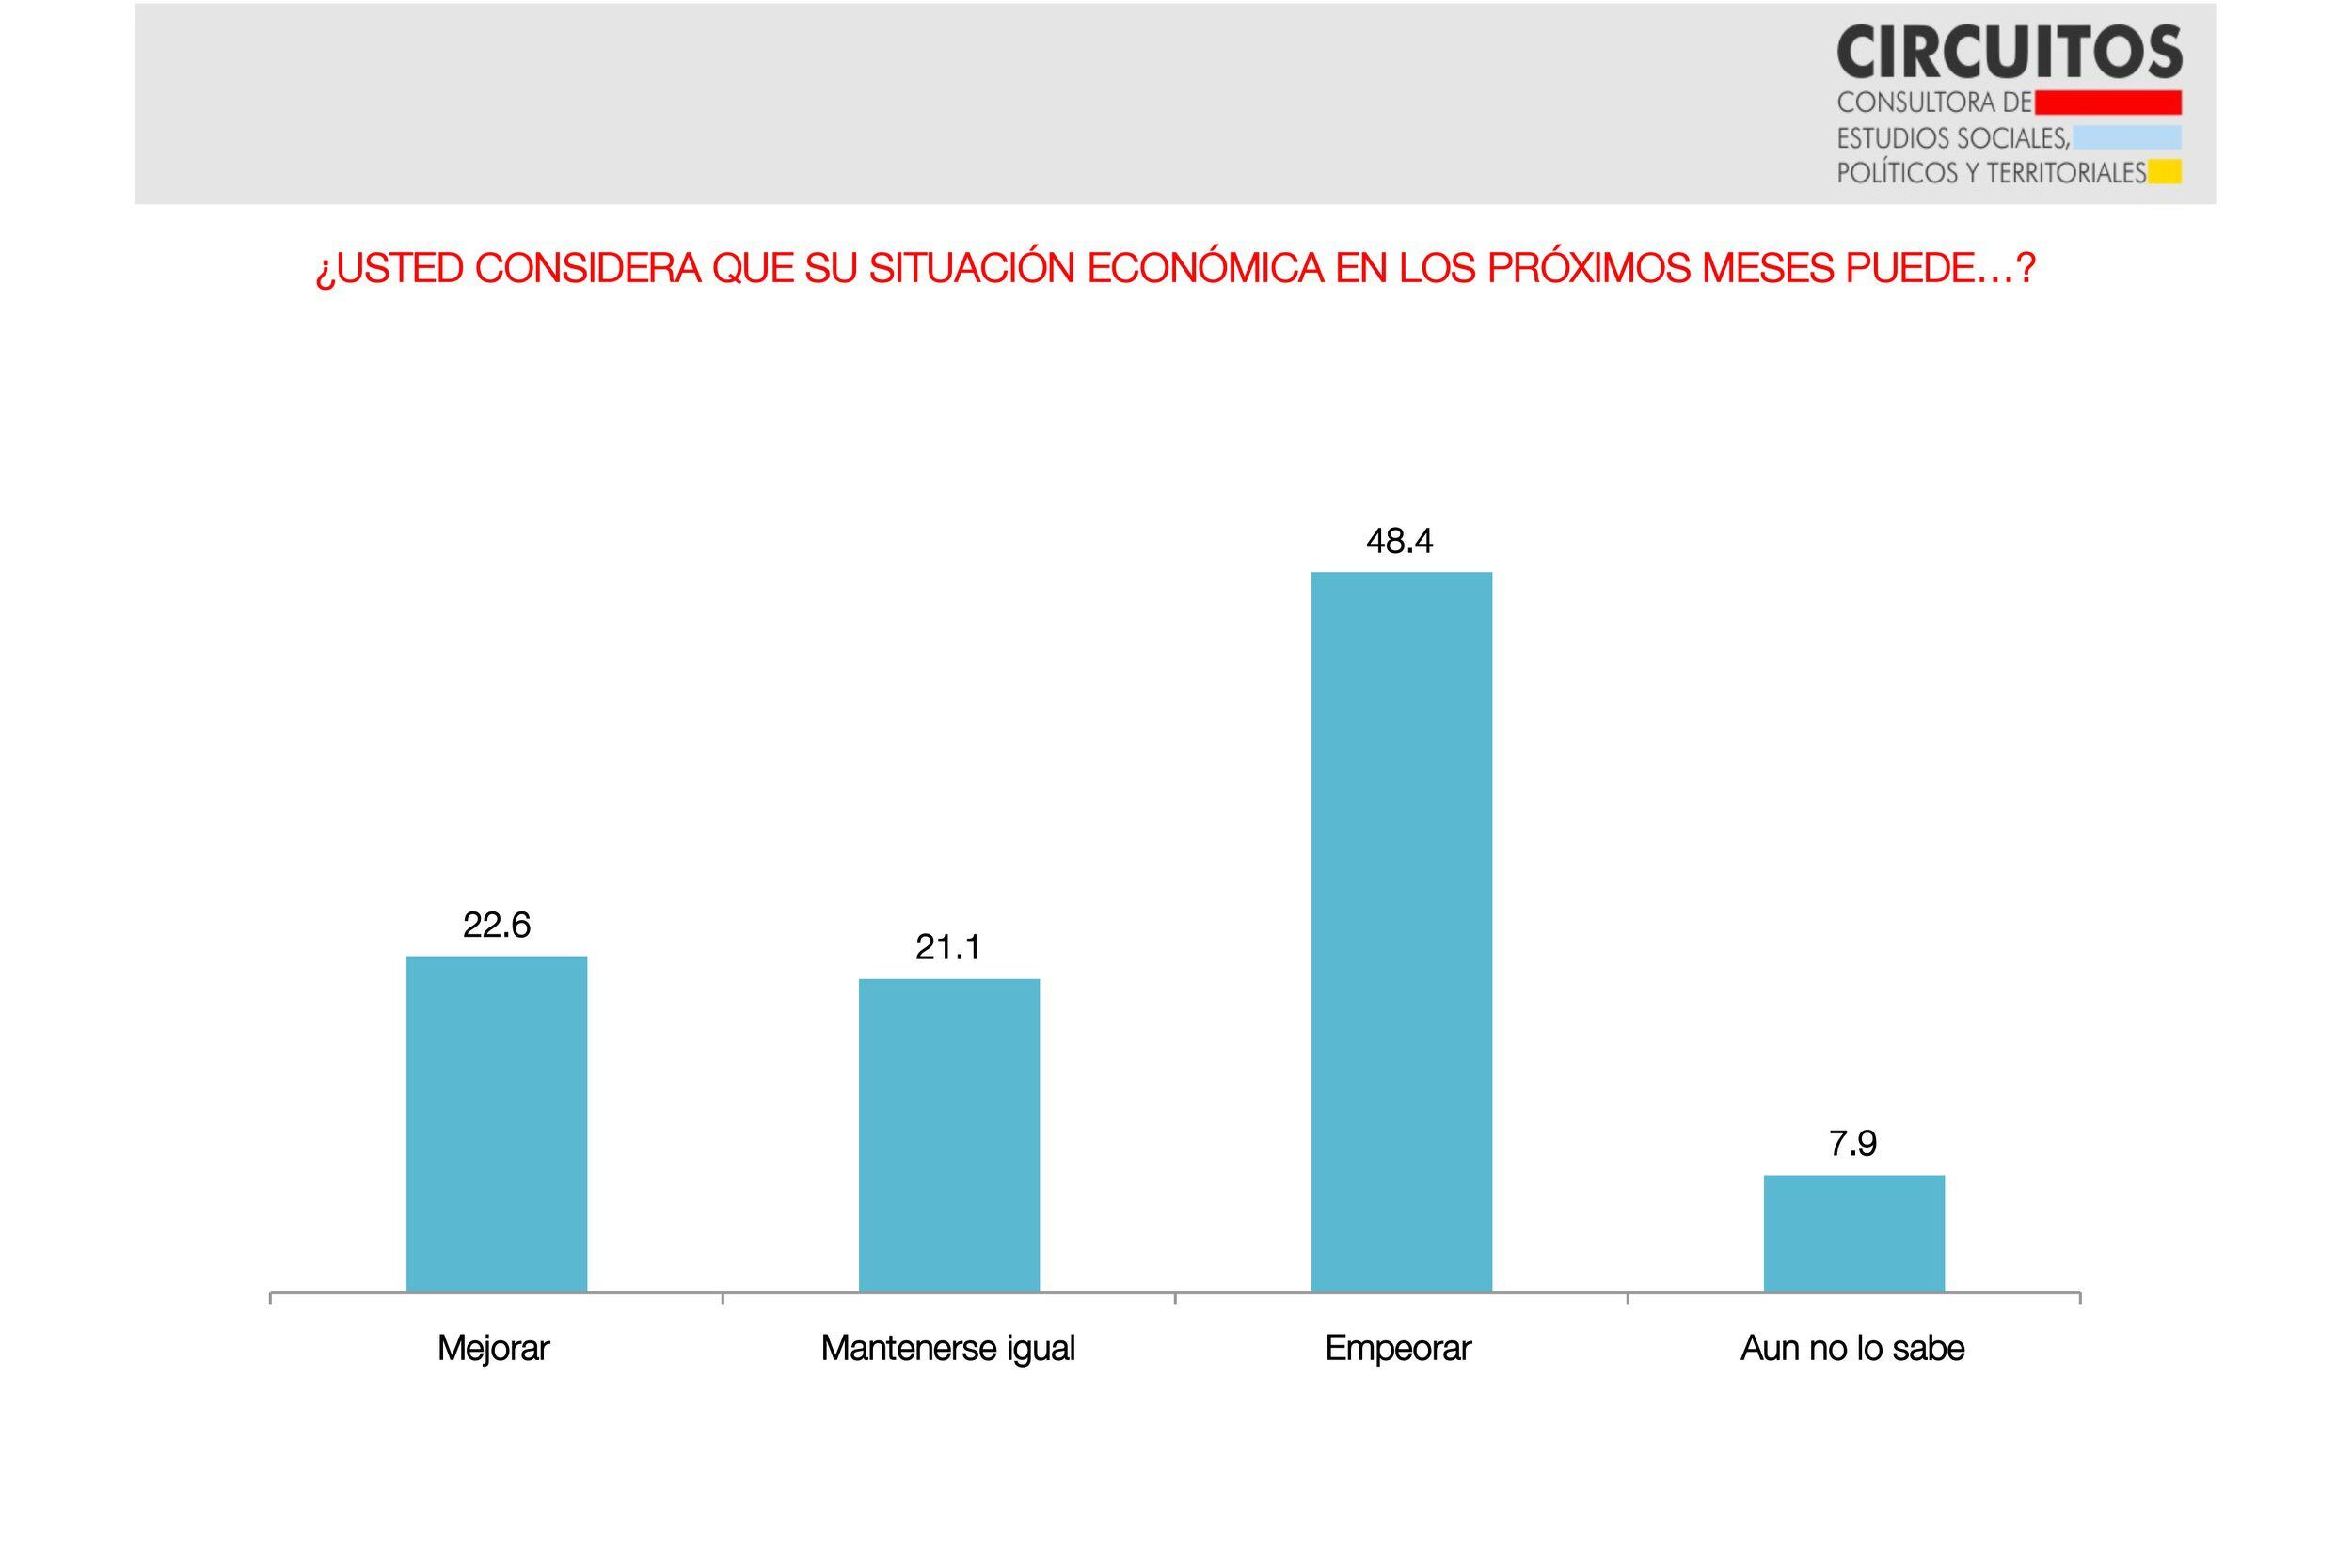 La percepción de los electores sobre la situación económica, según los números de la consultora Circuitos